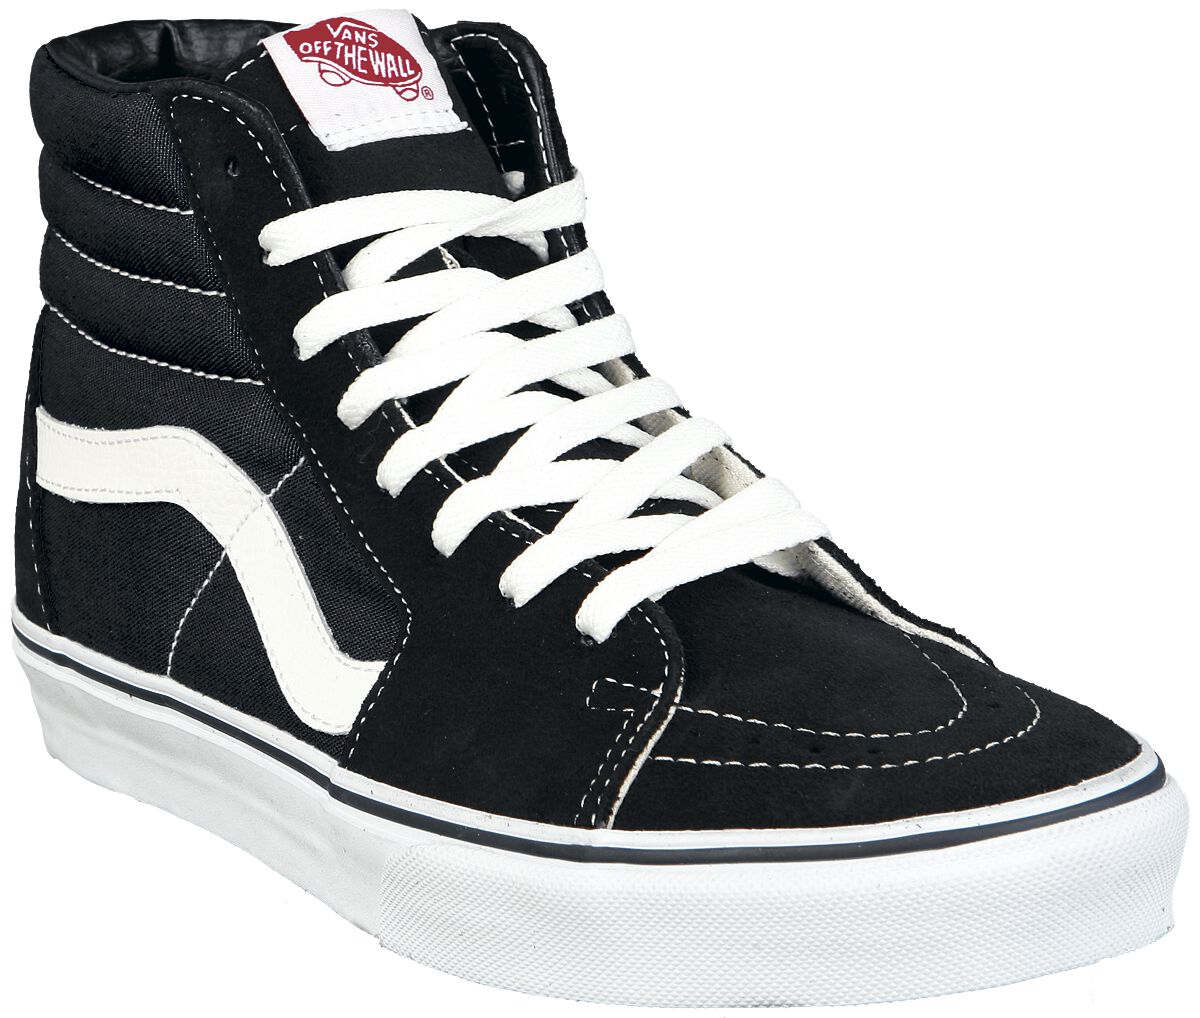 Vans Sneaker high - SK8-Hi - EU37 bis EU47 - Größe EU44 - schwarz/weiß